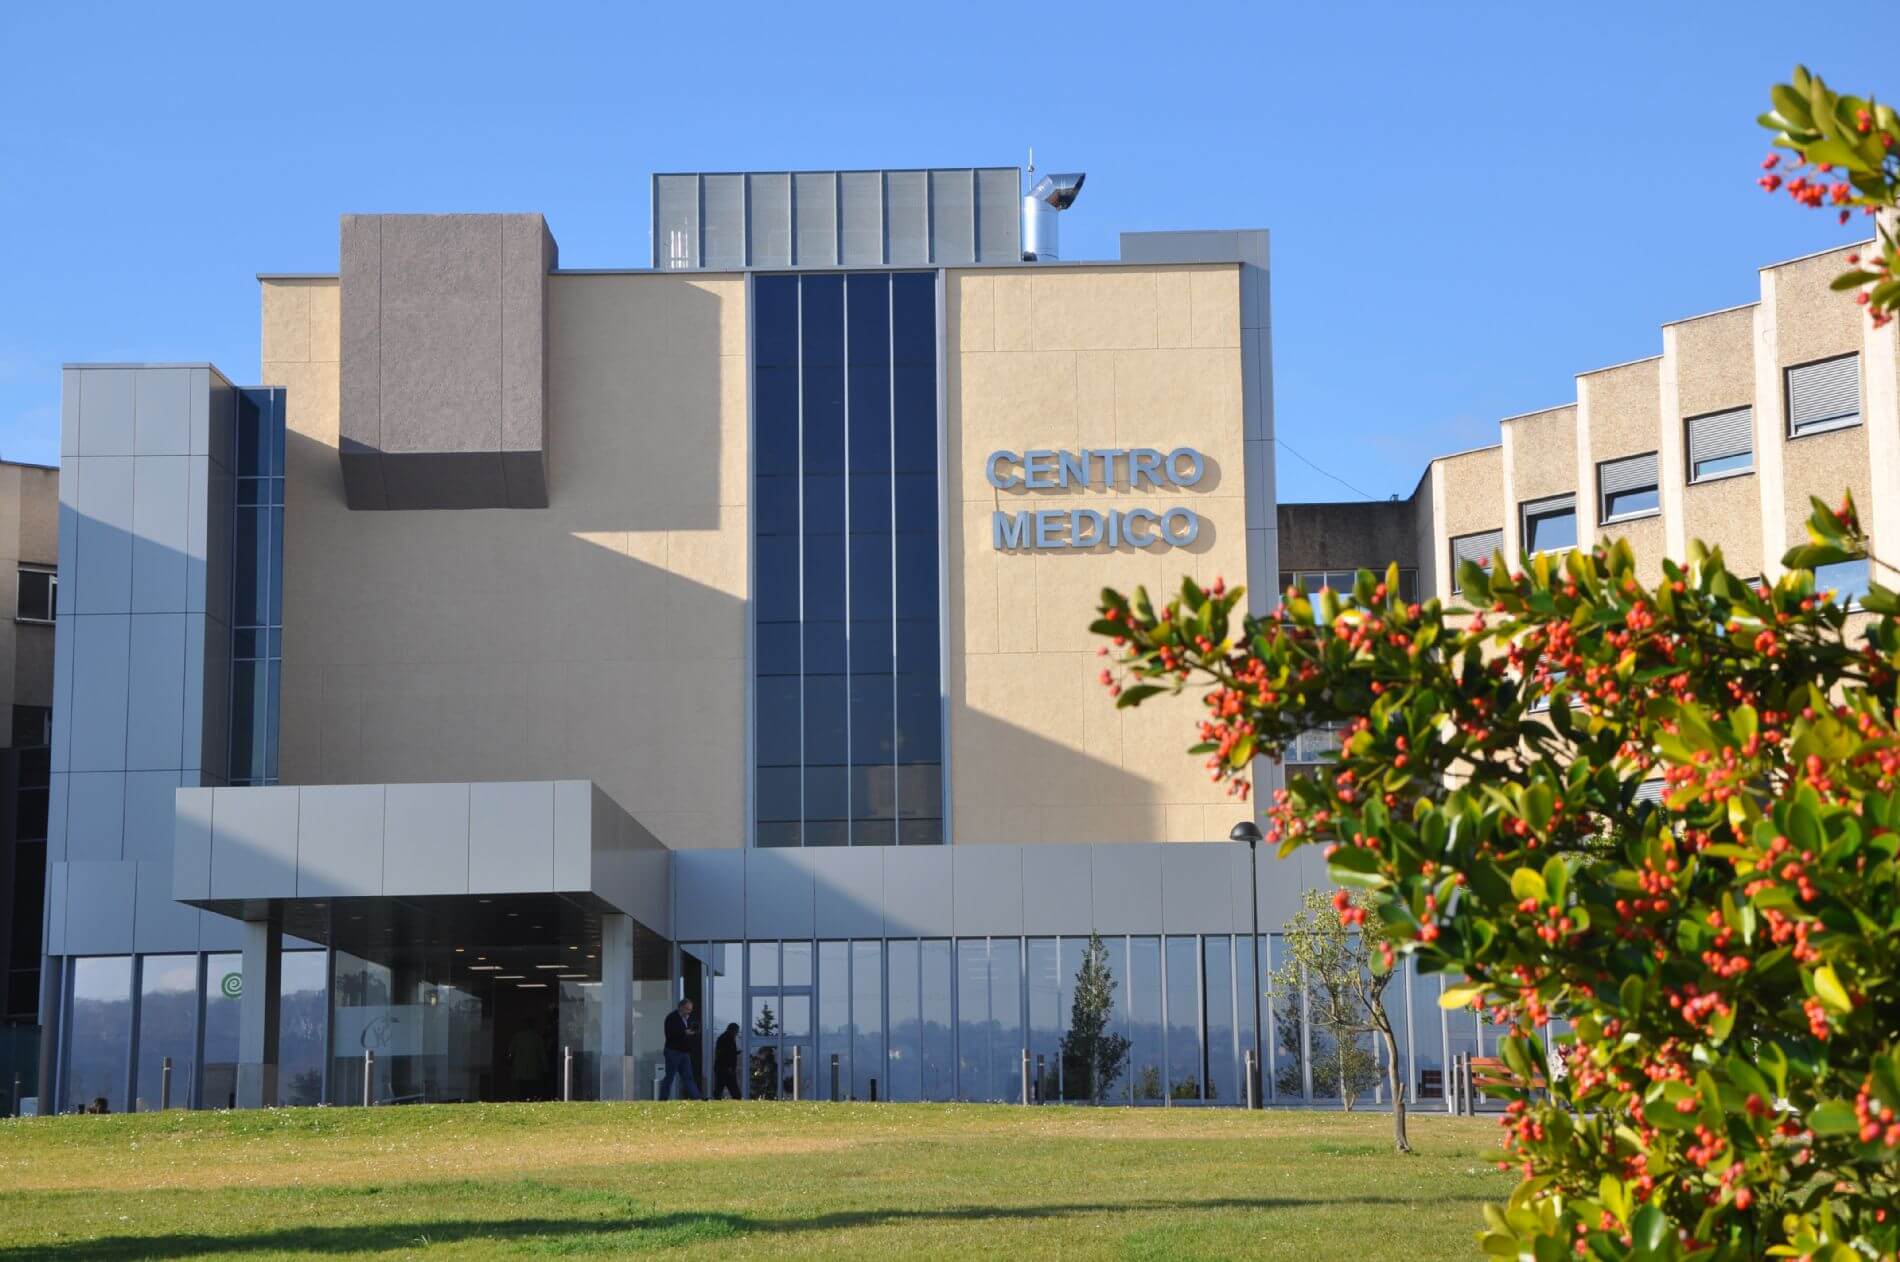 El Centro Médico de Asturias completa su metamorfosis con su nueva fachada